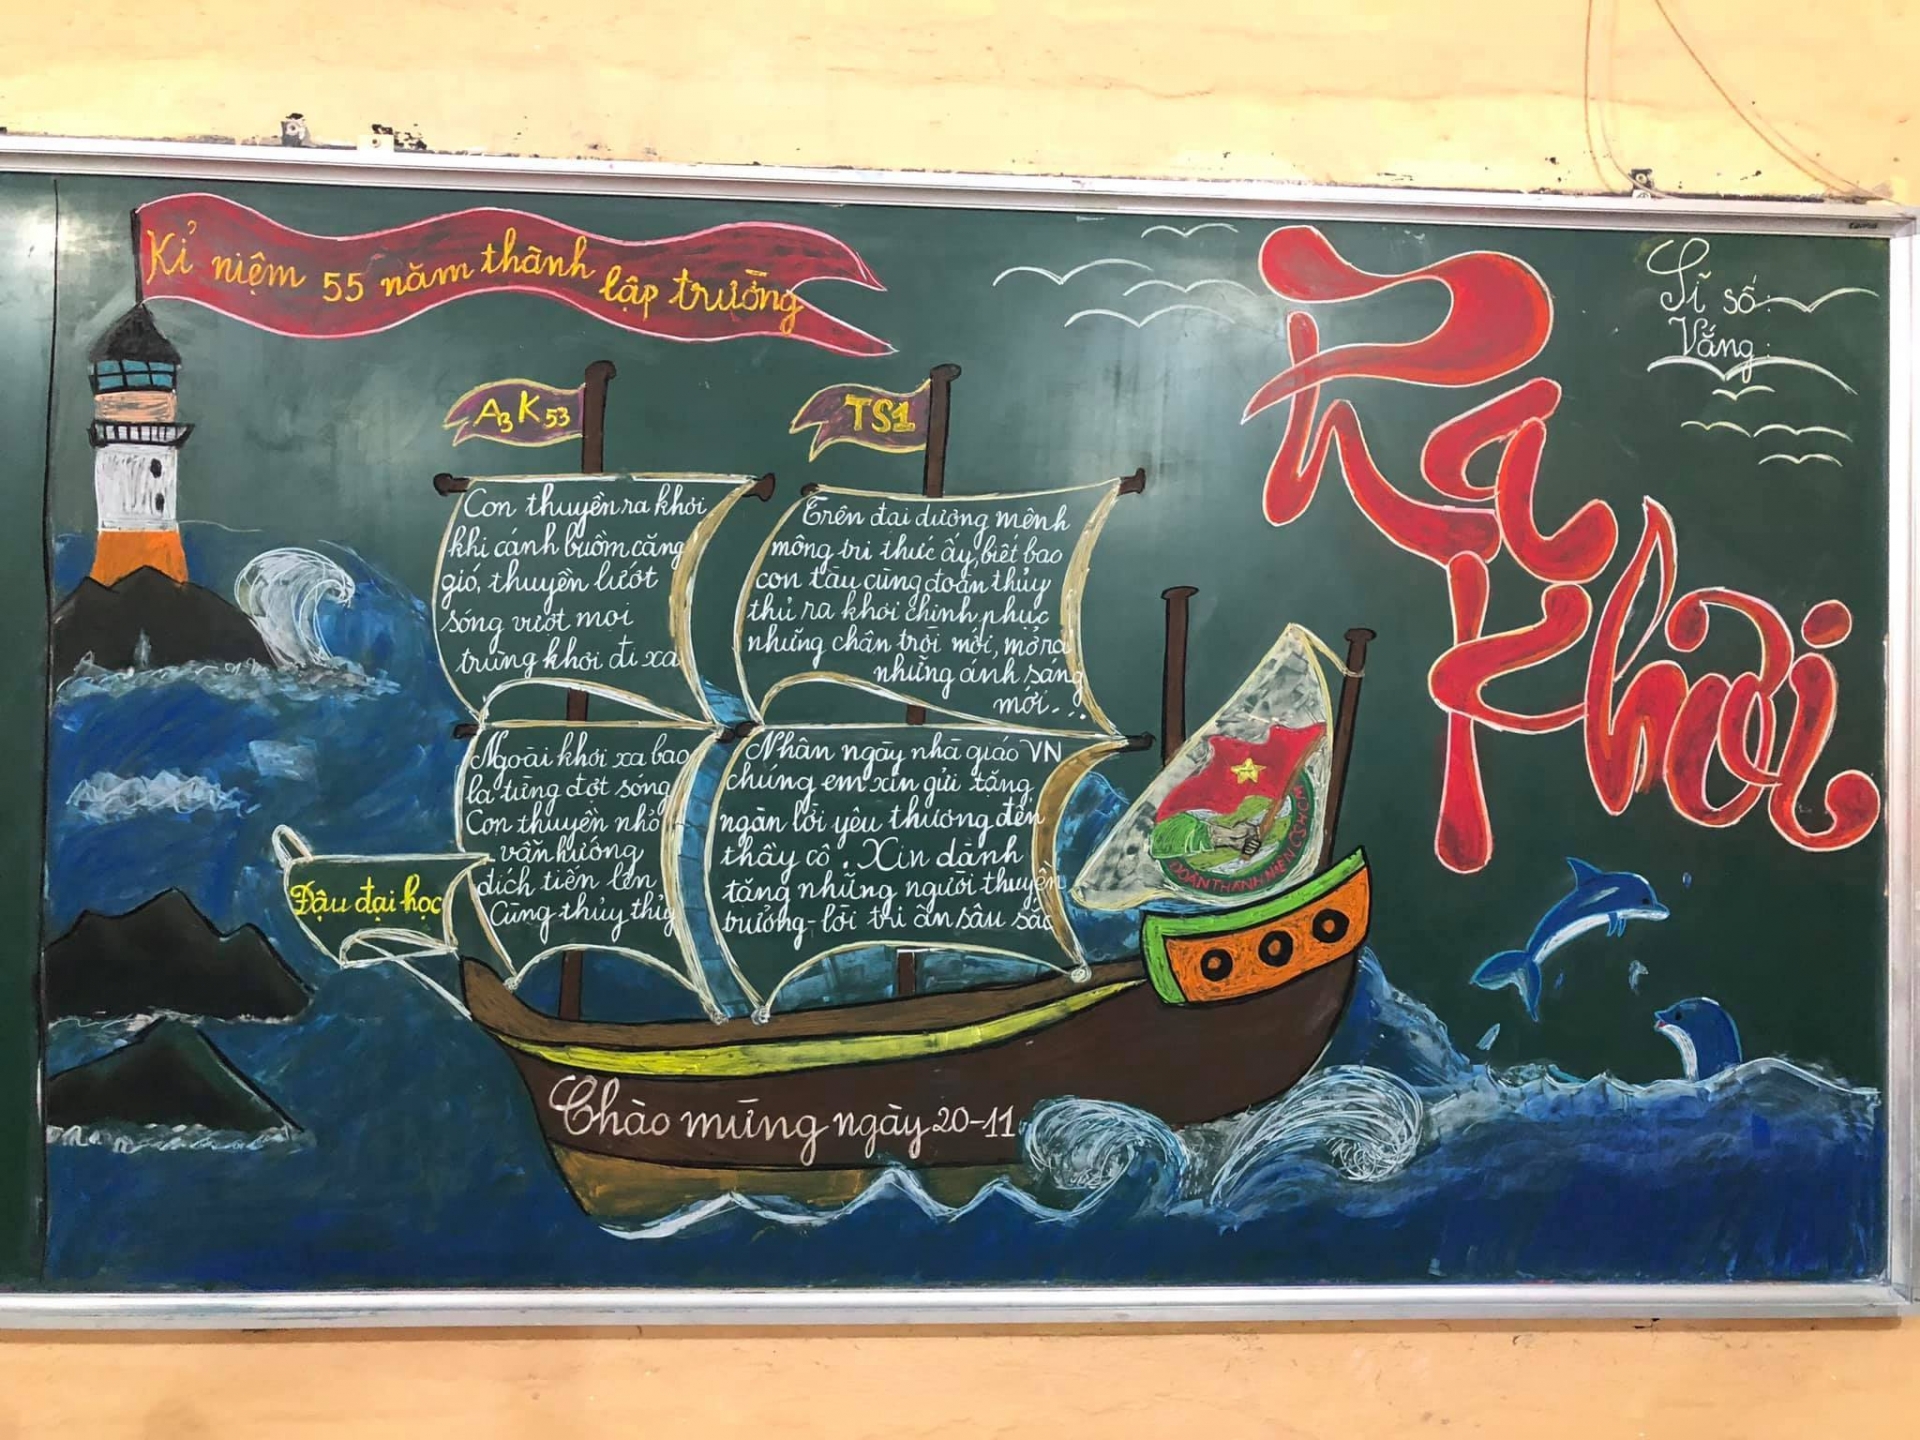 Xuýt xoa với loạt báo tường mừng 20/11 vẽ bằng phấn của học sinh Thanh Hóa - Ảnh 4